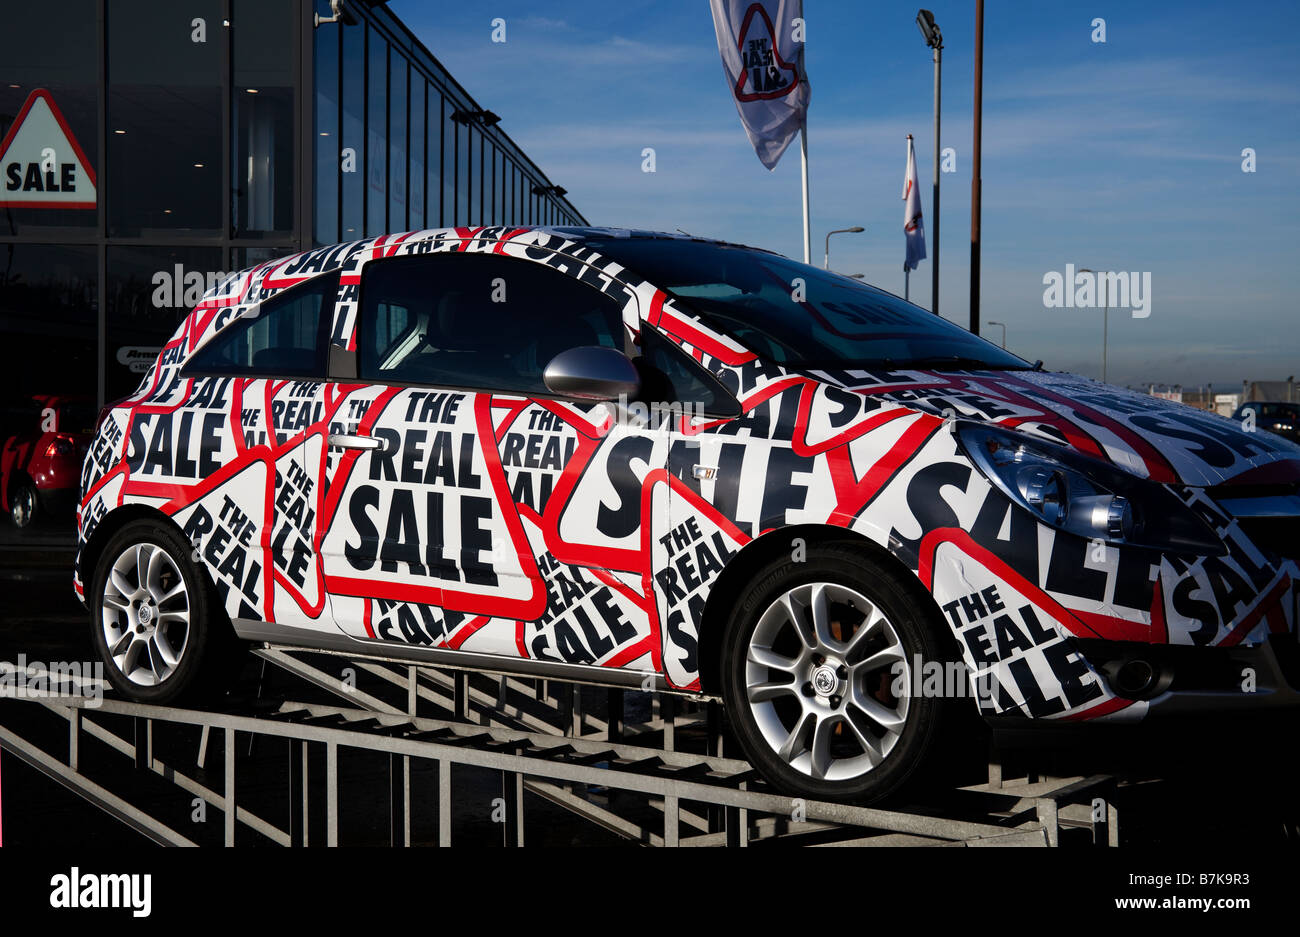 Arnold Clark Auto Händler Fahrzeug Werbung ihr Slogan "The Real Sale", Edinburgh, Scotland, UK, Europa Stockfoto